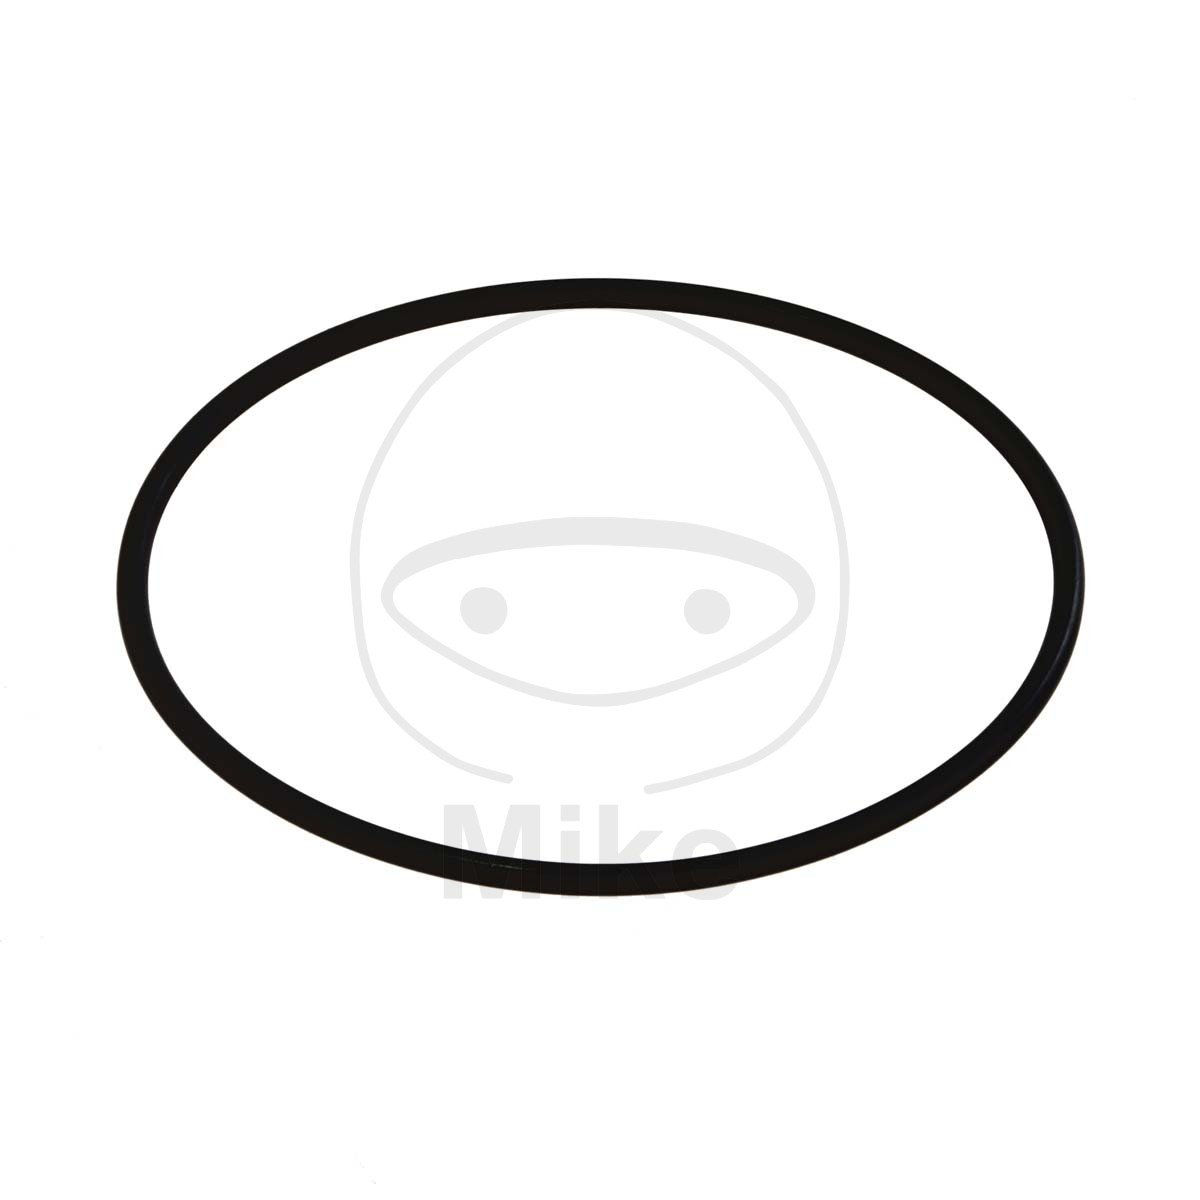 Obrázek produktu Těsnění ventilového víka ATHENA M753007800004 O-kroužek 3X78 mm